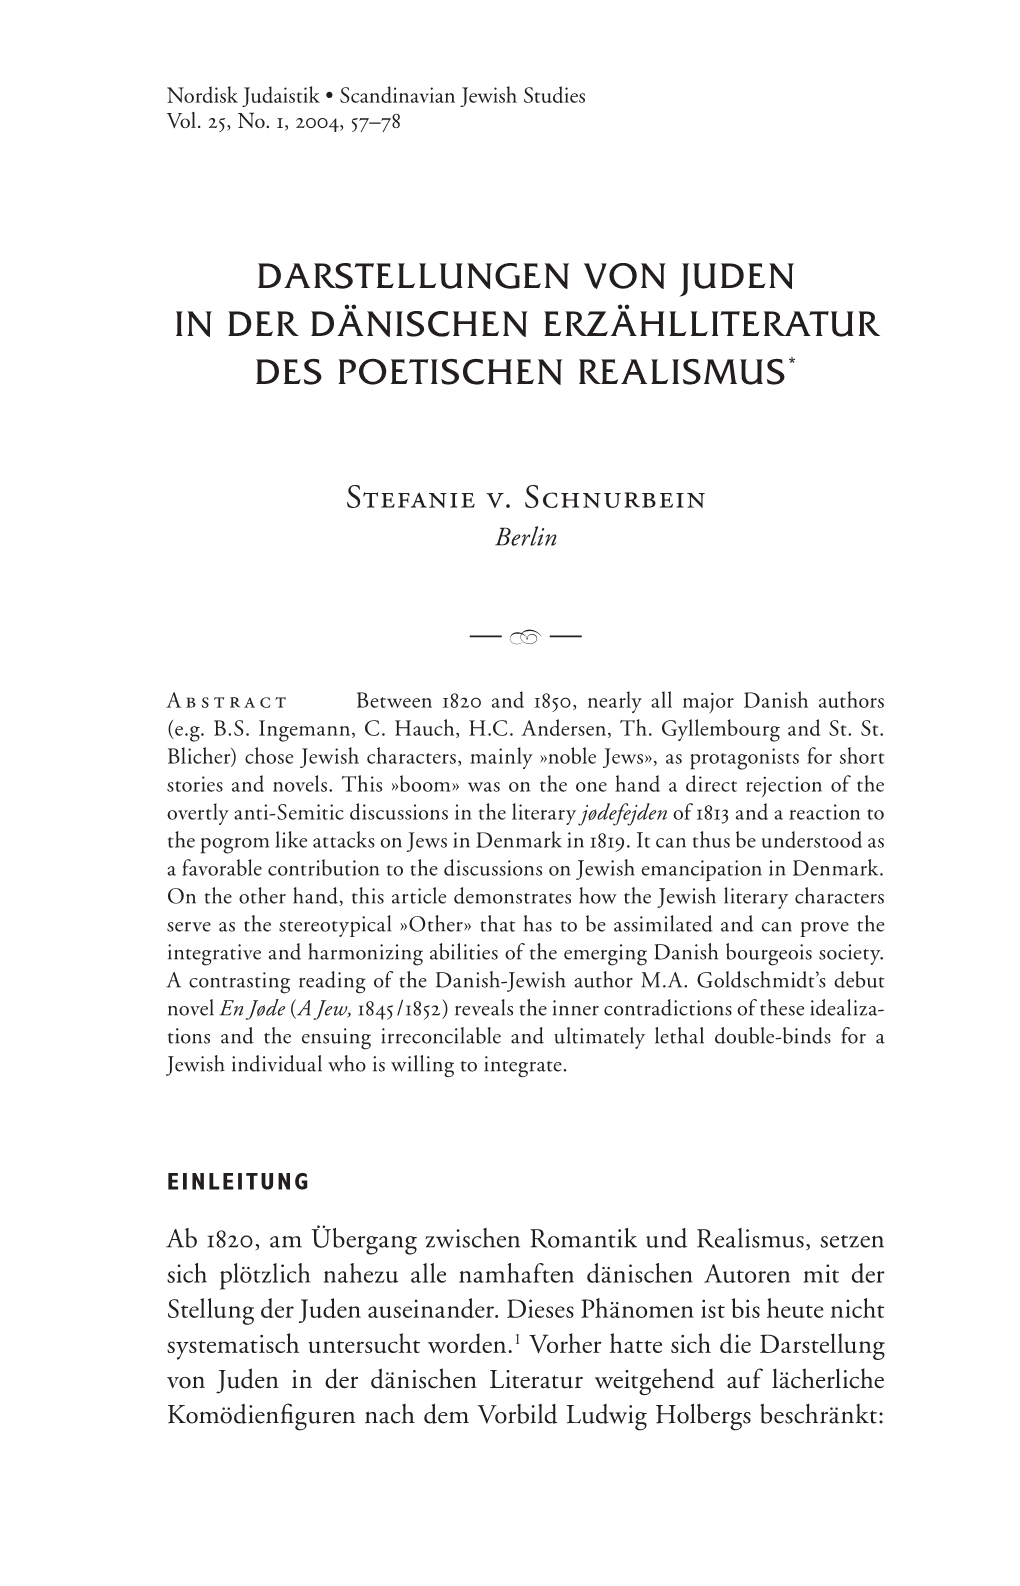 Darstellungen Von Juden in Der Dänischen Erzählliteratur Des Poetischen Realismus*